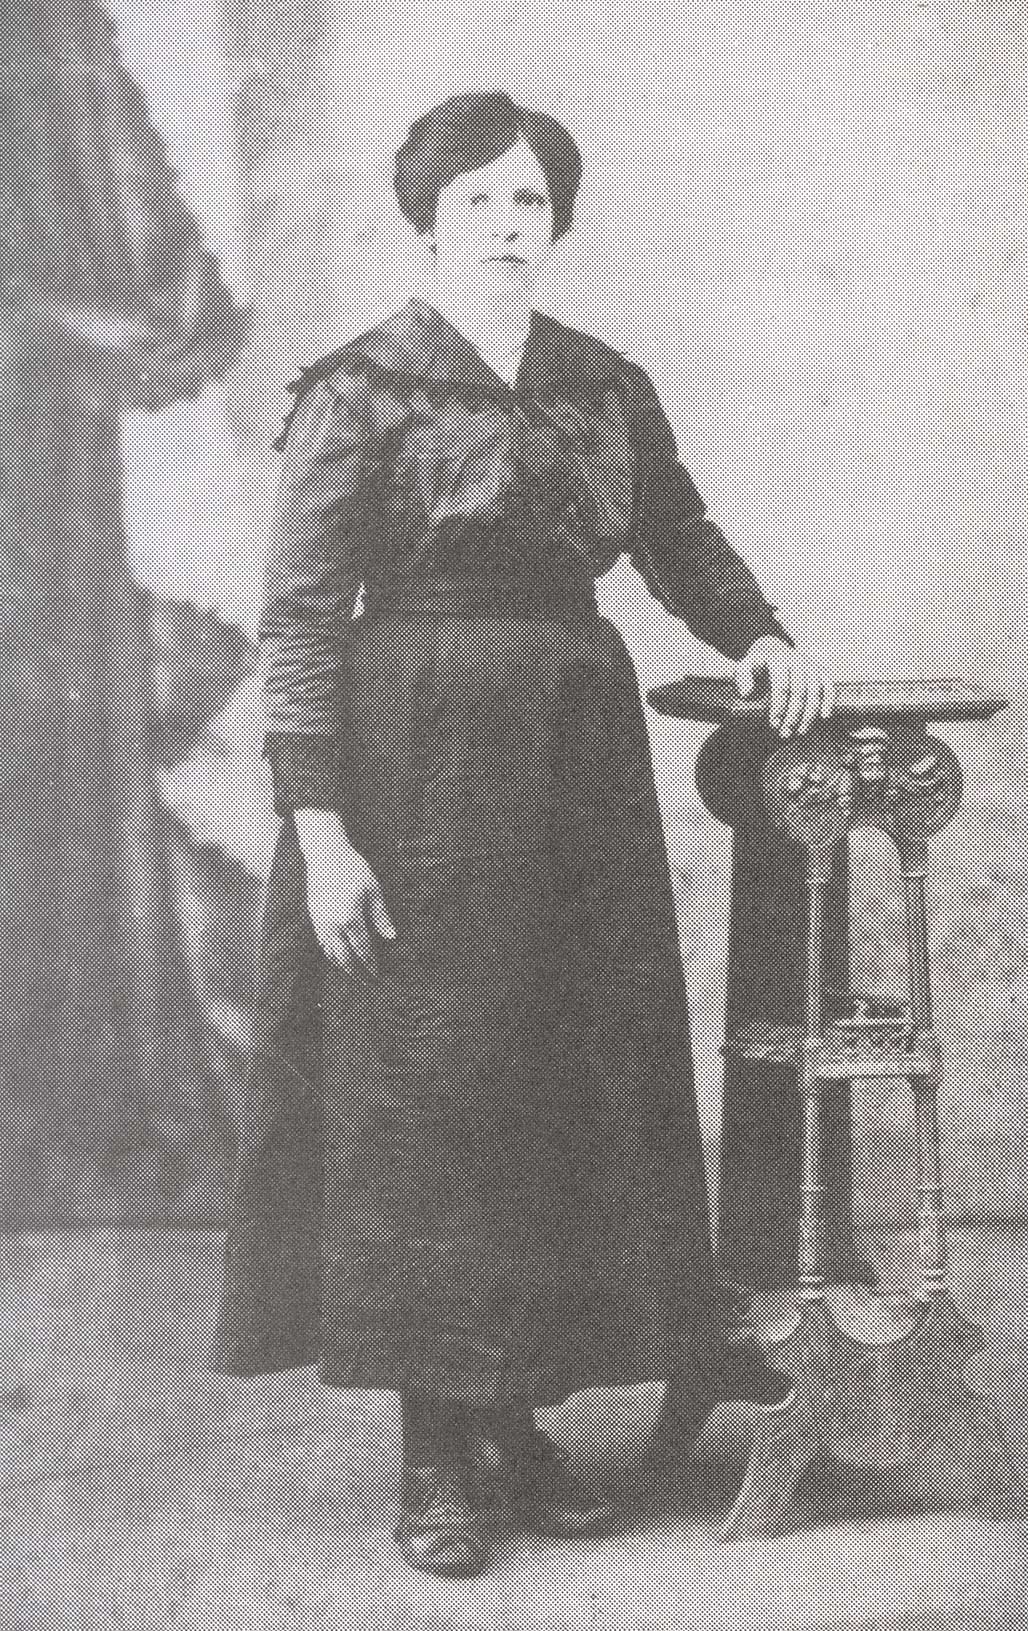 Vieille image d’une femme en robe noire, debout la main sur une étagère.